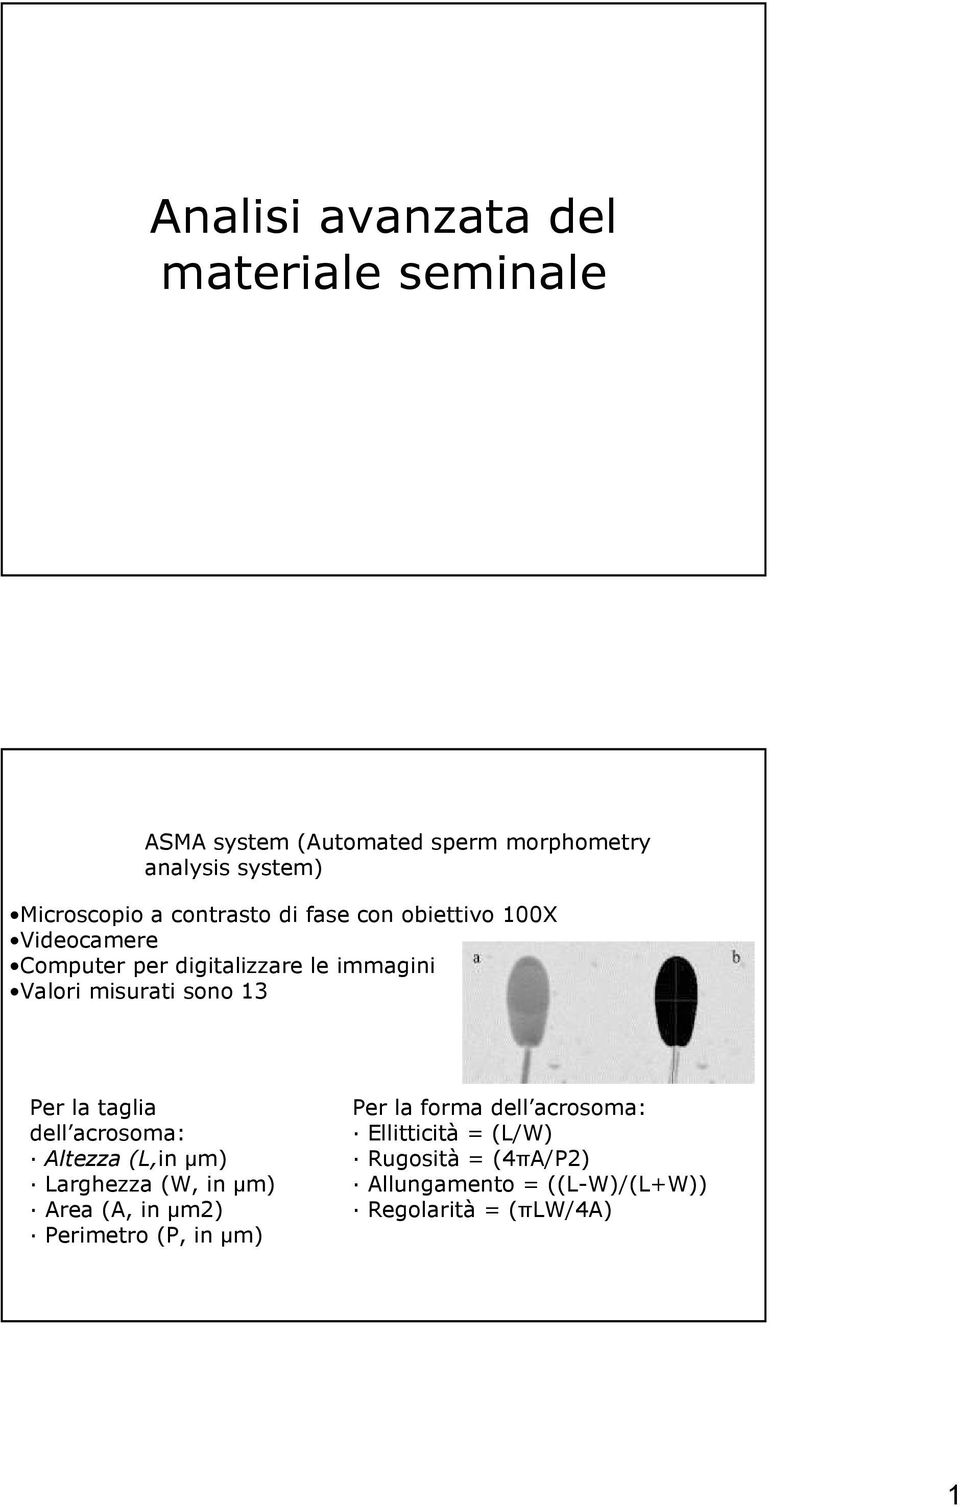 Per la taglia dell acrosoma: Altezza (L,in µm) Larghezza (W, in µm) Area (A, in µm2) Perimetro (P, in µm) Per la